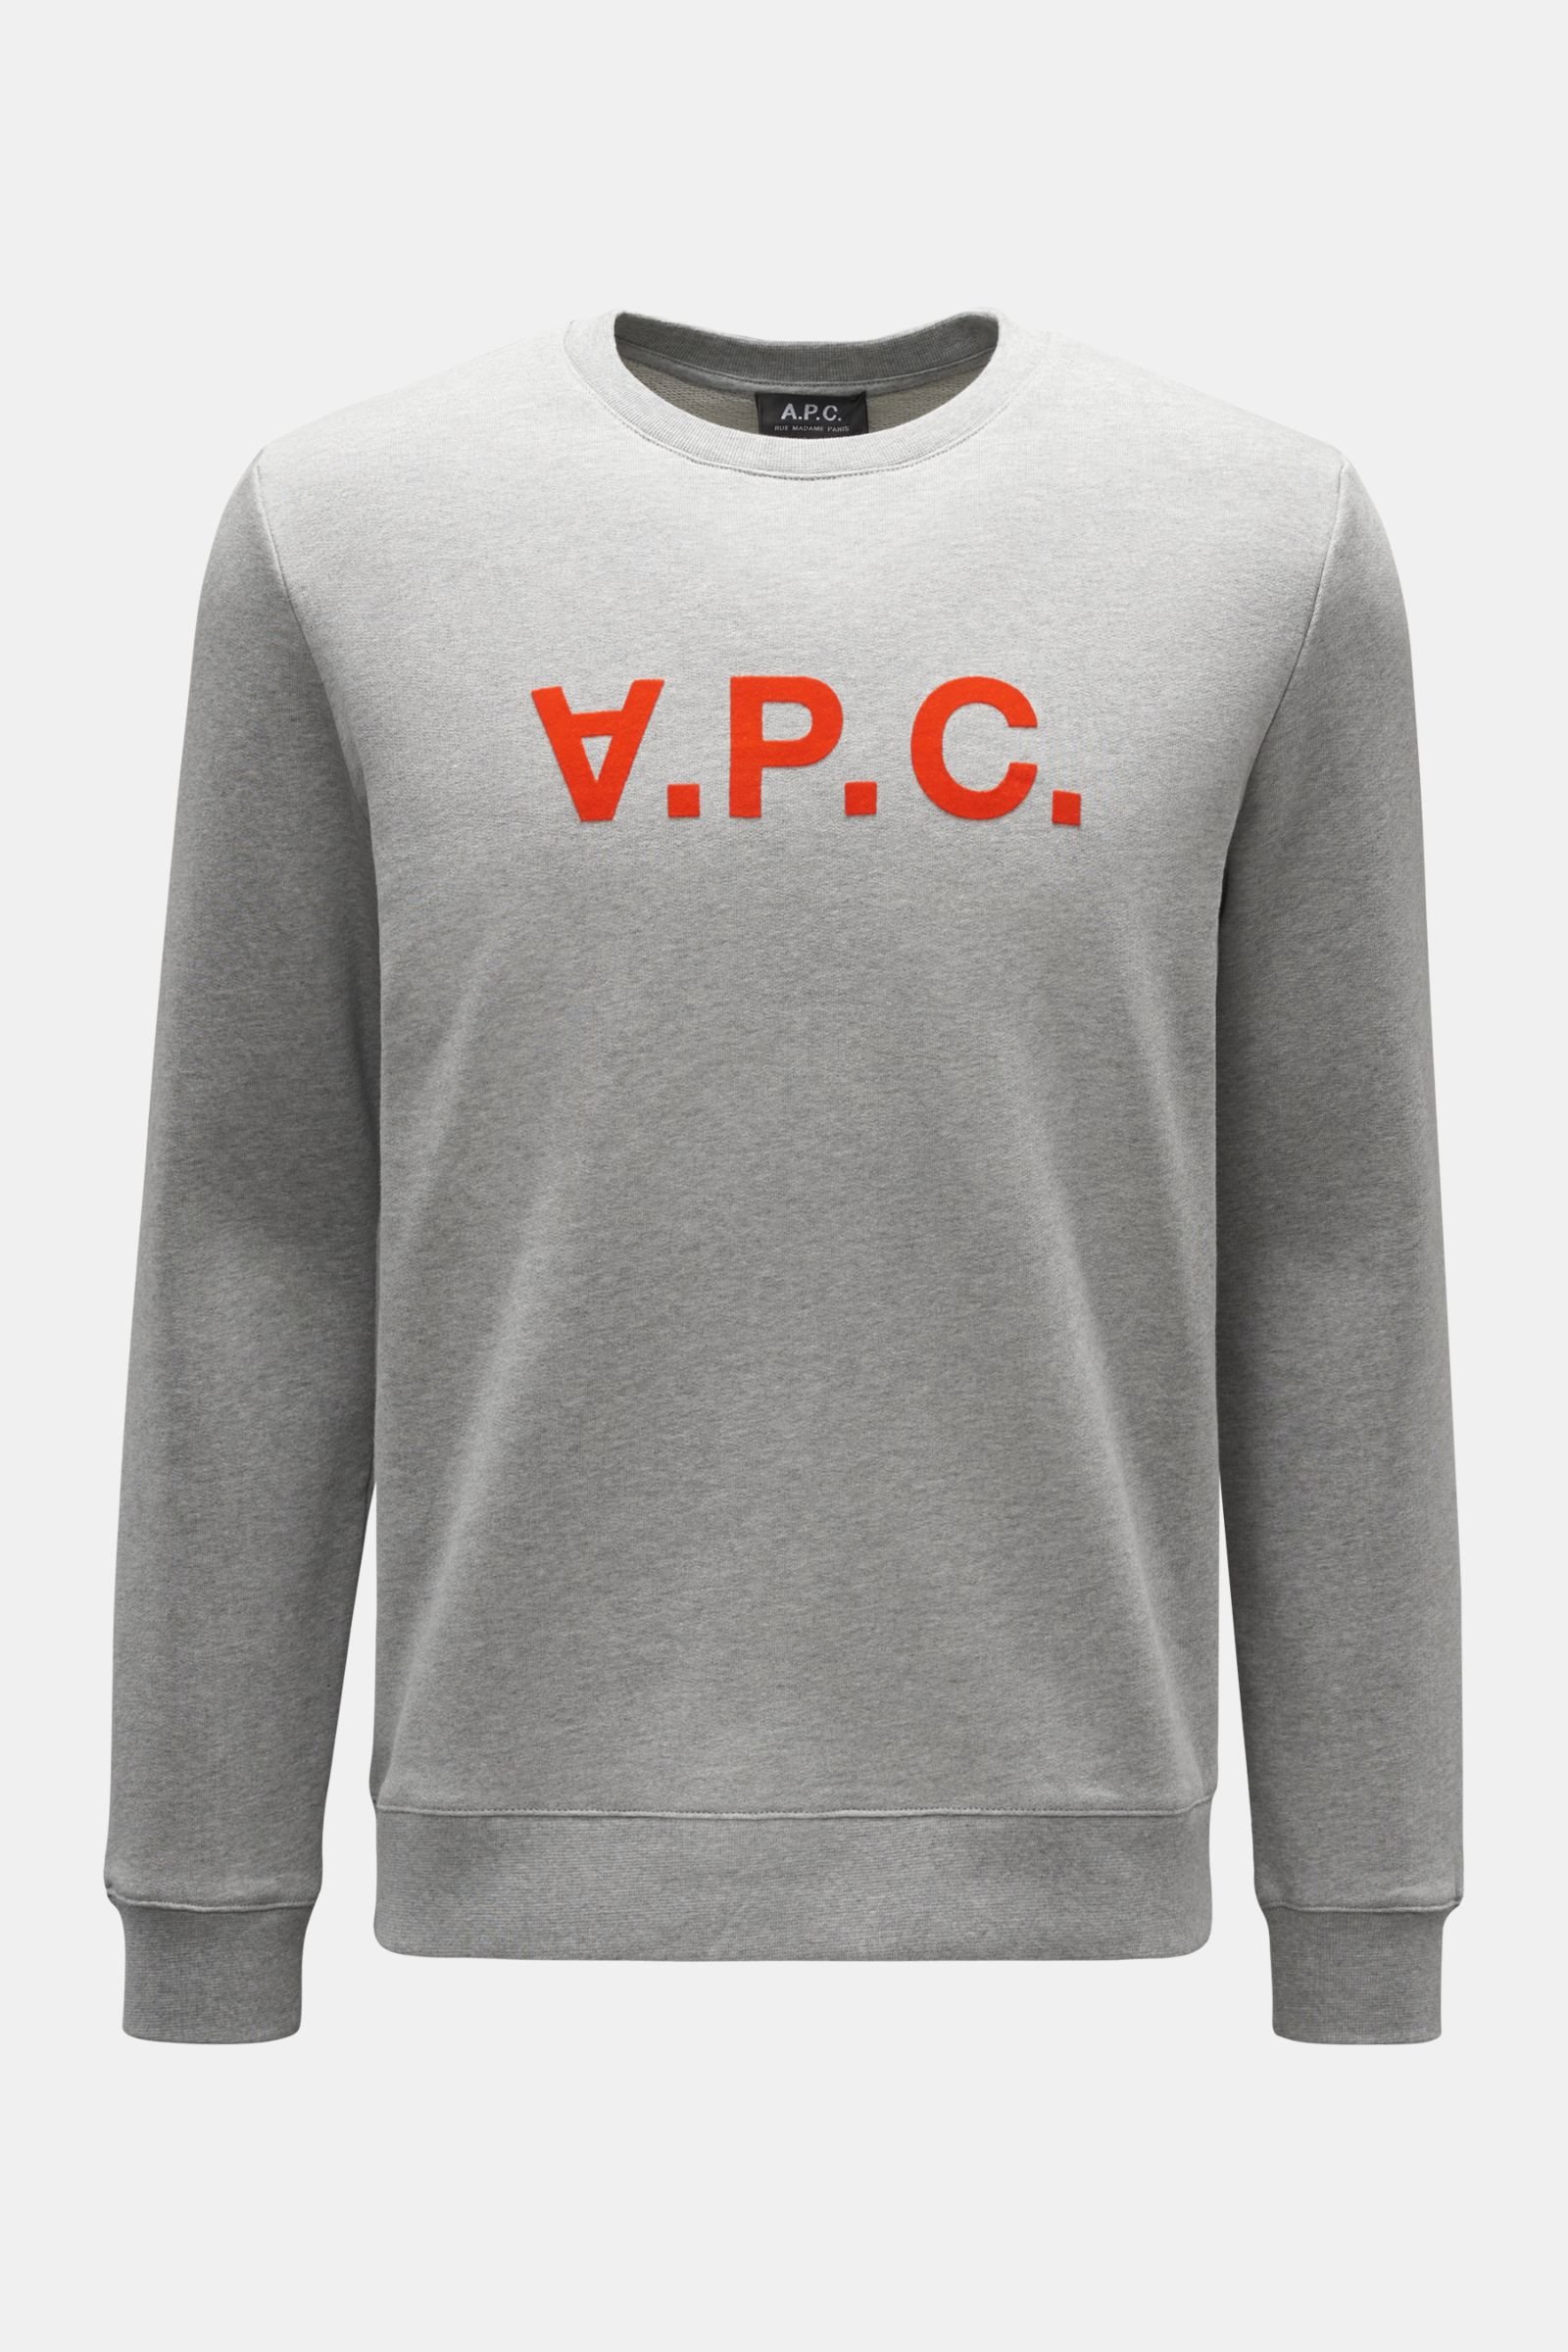 Crew neck sweatshirt 'VPC' grey